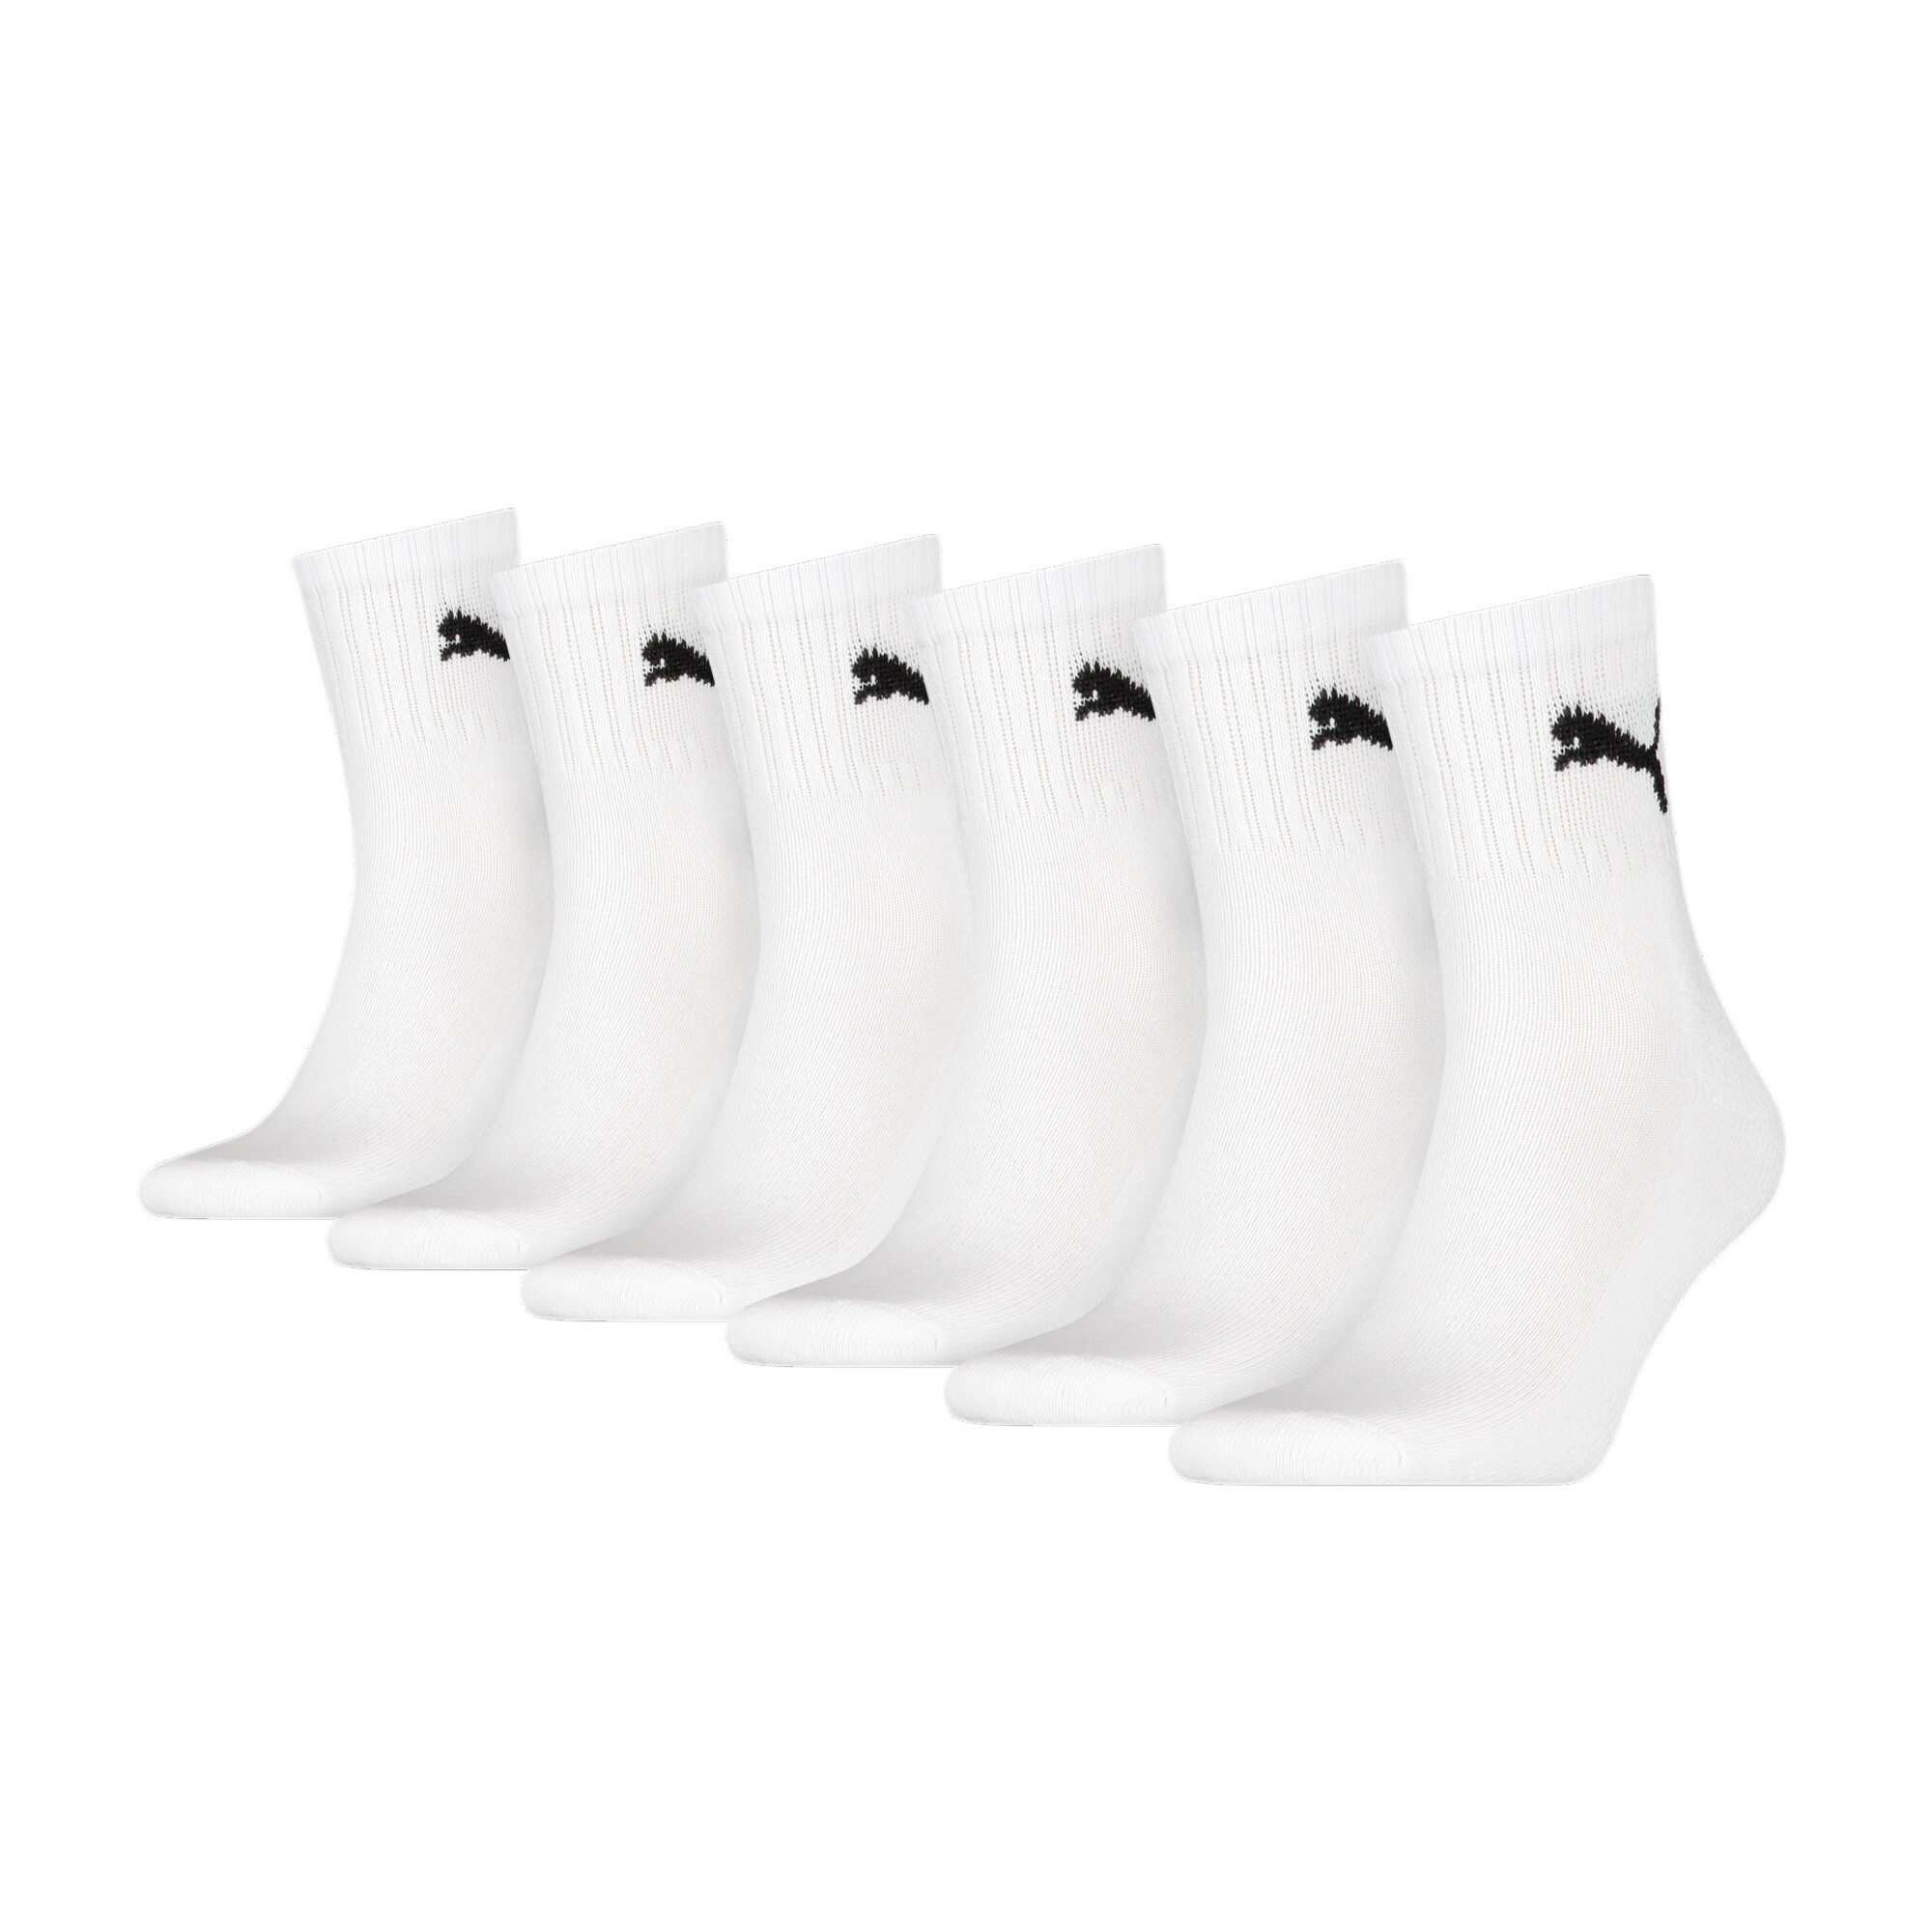 Puma Unisex Short Crew Shirt Socks 6 Pack, White, Size 43-46, Clothing